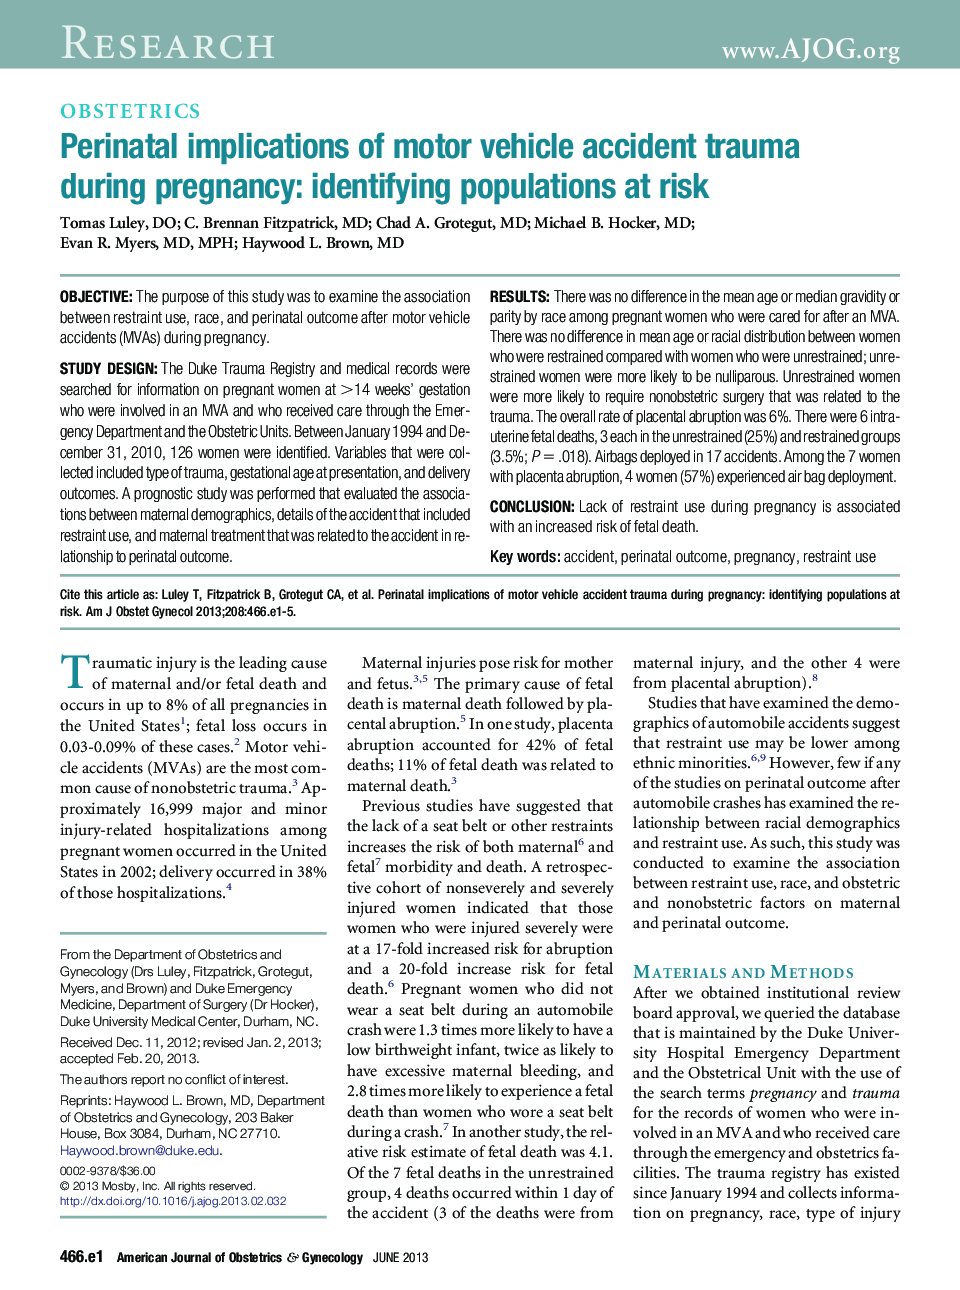 پیامدهای پری ناتال ترومای ناشی از حوادث ناشی از وسایل نقلیه موتوری در دوران بارداری: شناسایی جمعیت در معرض خطر 